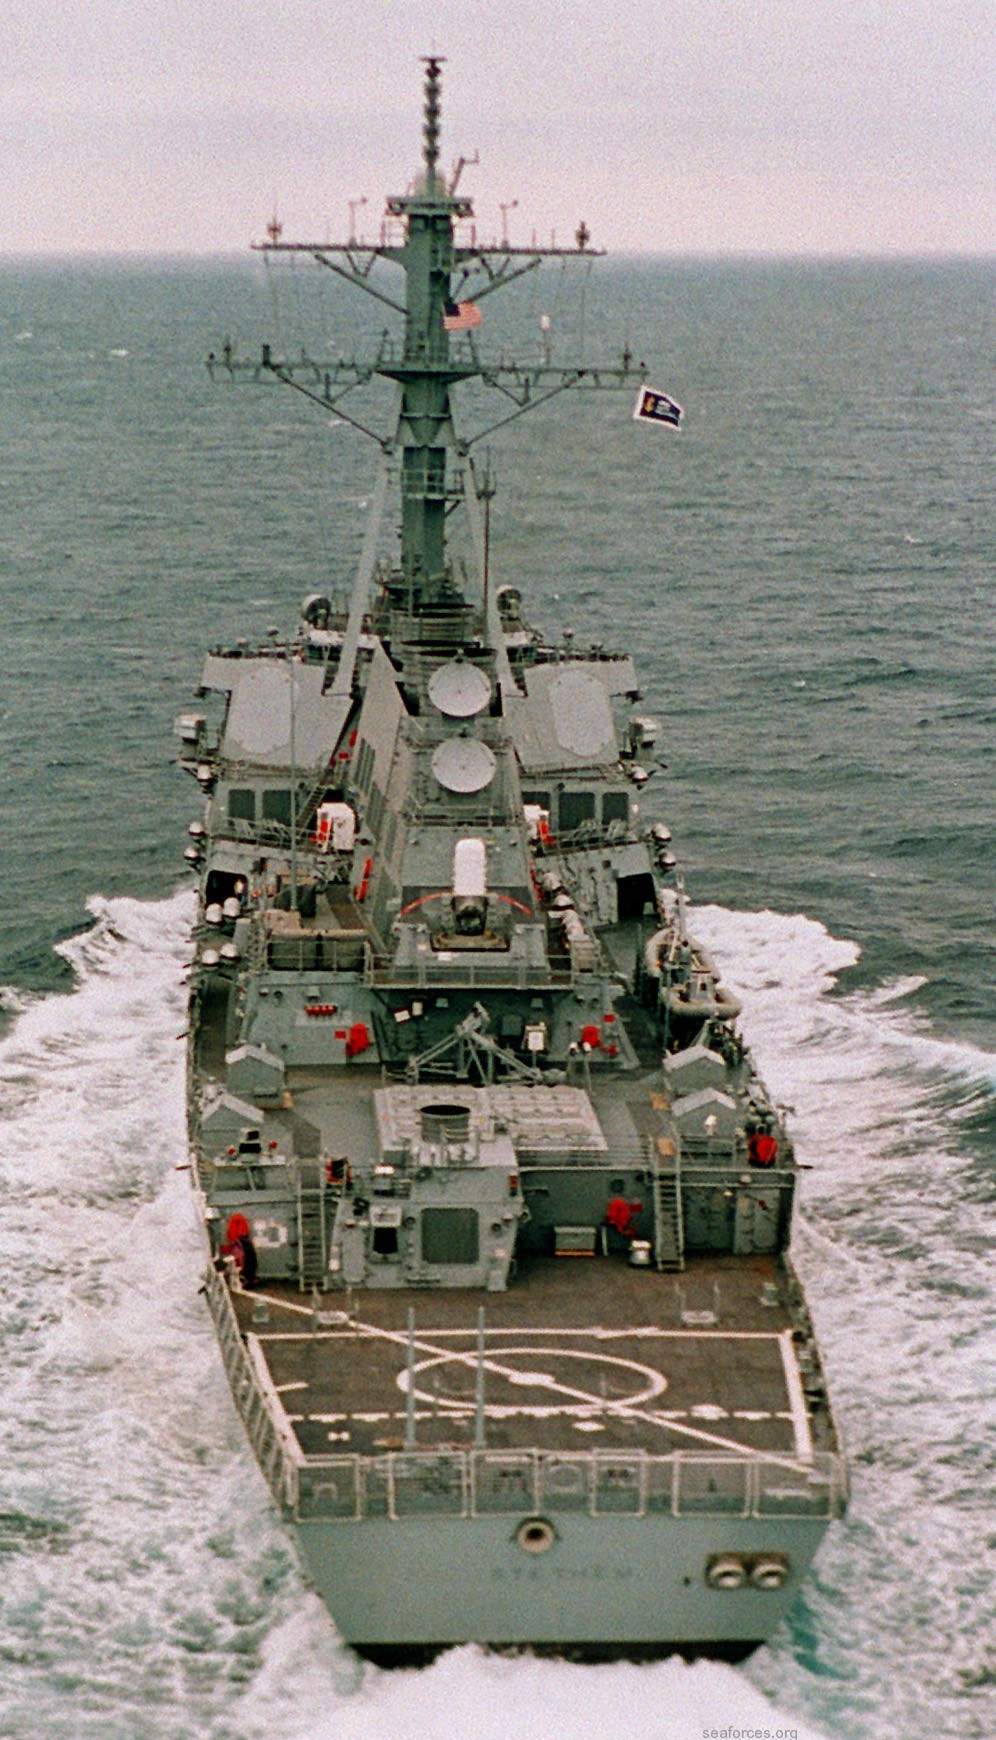 ddg-63 uss stethem guided missile destroyer 55 ingalls shipbuilding pascagoula mississippi